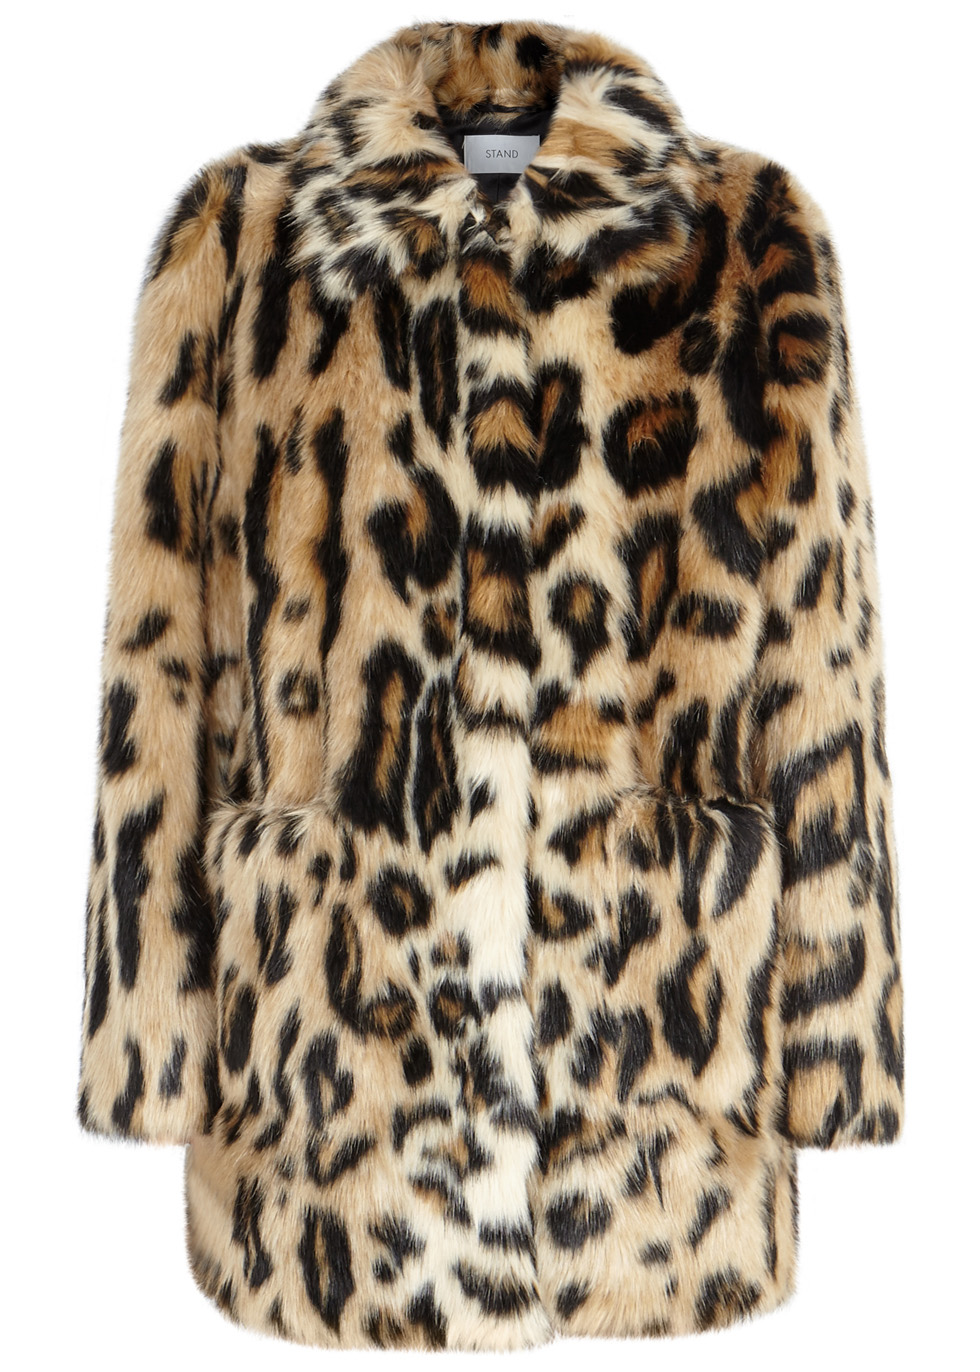 Stand Alexa leopard-print faux fur jacket - Harvey Nichols